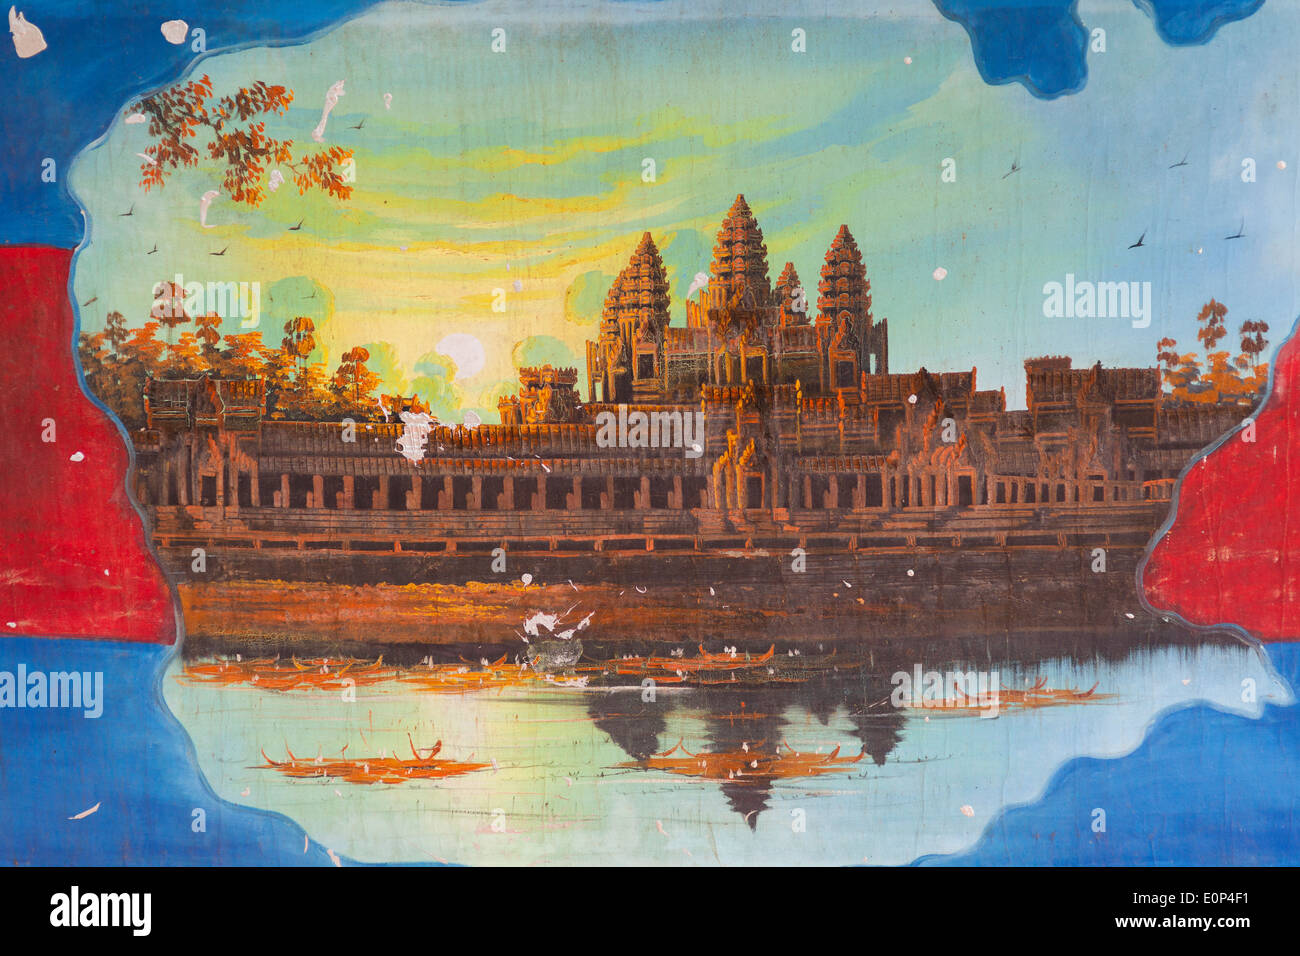 Peinture khmère d'Angkor Wat au coucher du soleil - Siem Reap, Cambodge Banque D'Images